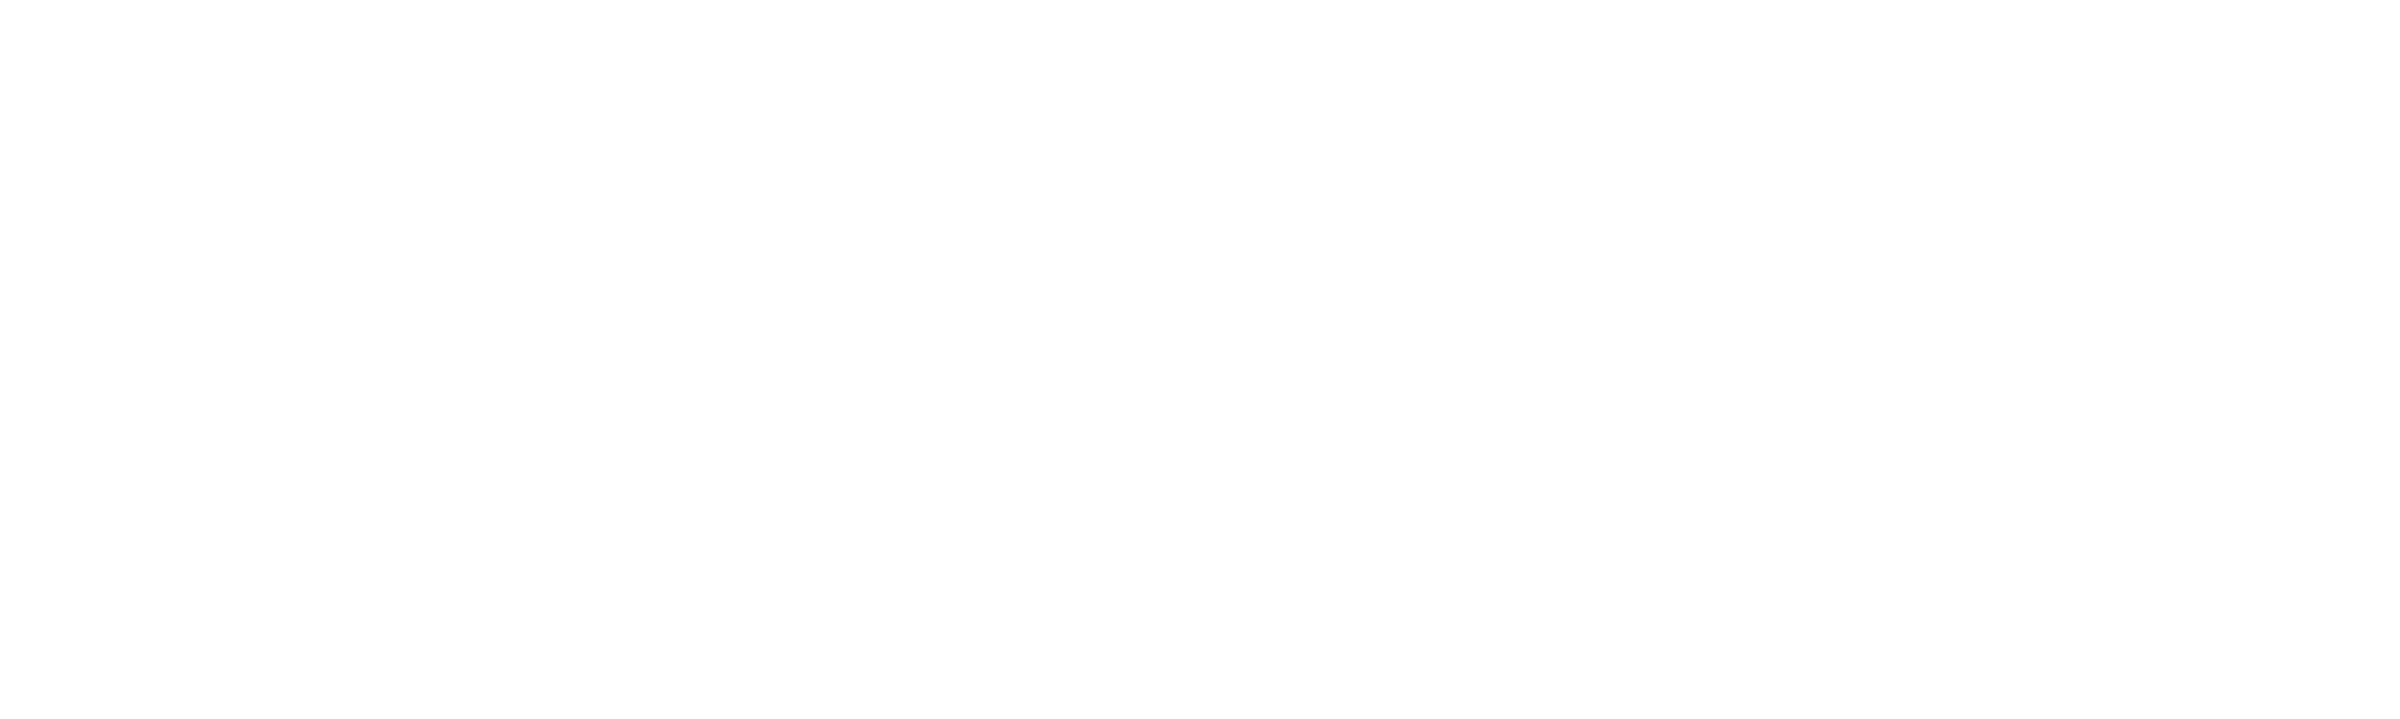 LFI_logo